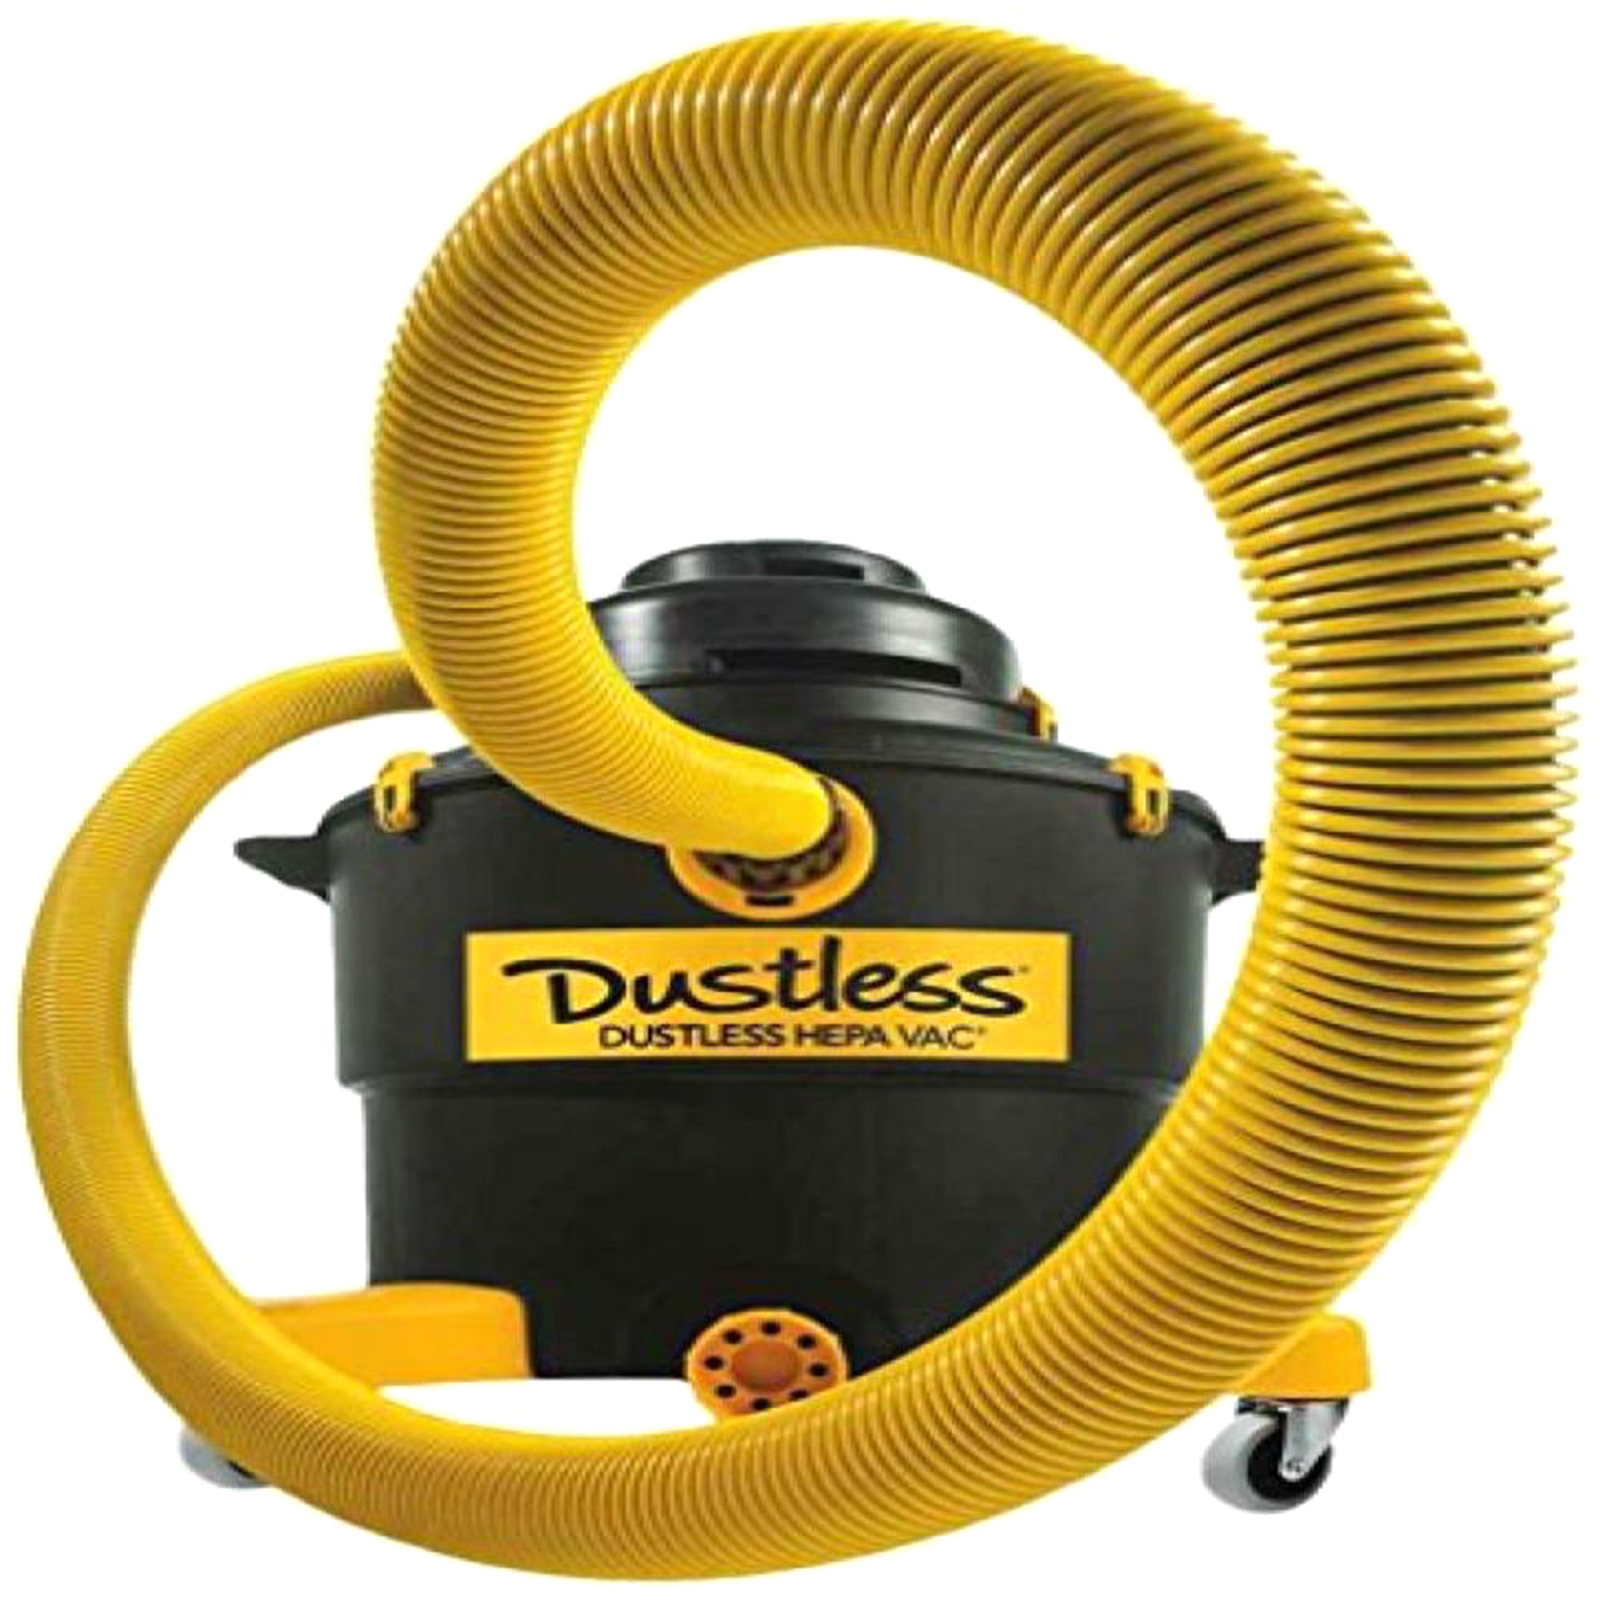 Dustless Technologies 5HP 16gal HEPA Wet/Dry Vacuum -Sears Marketplace